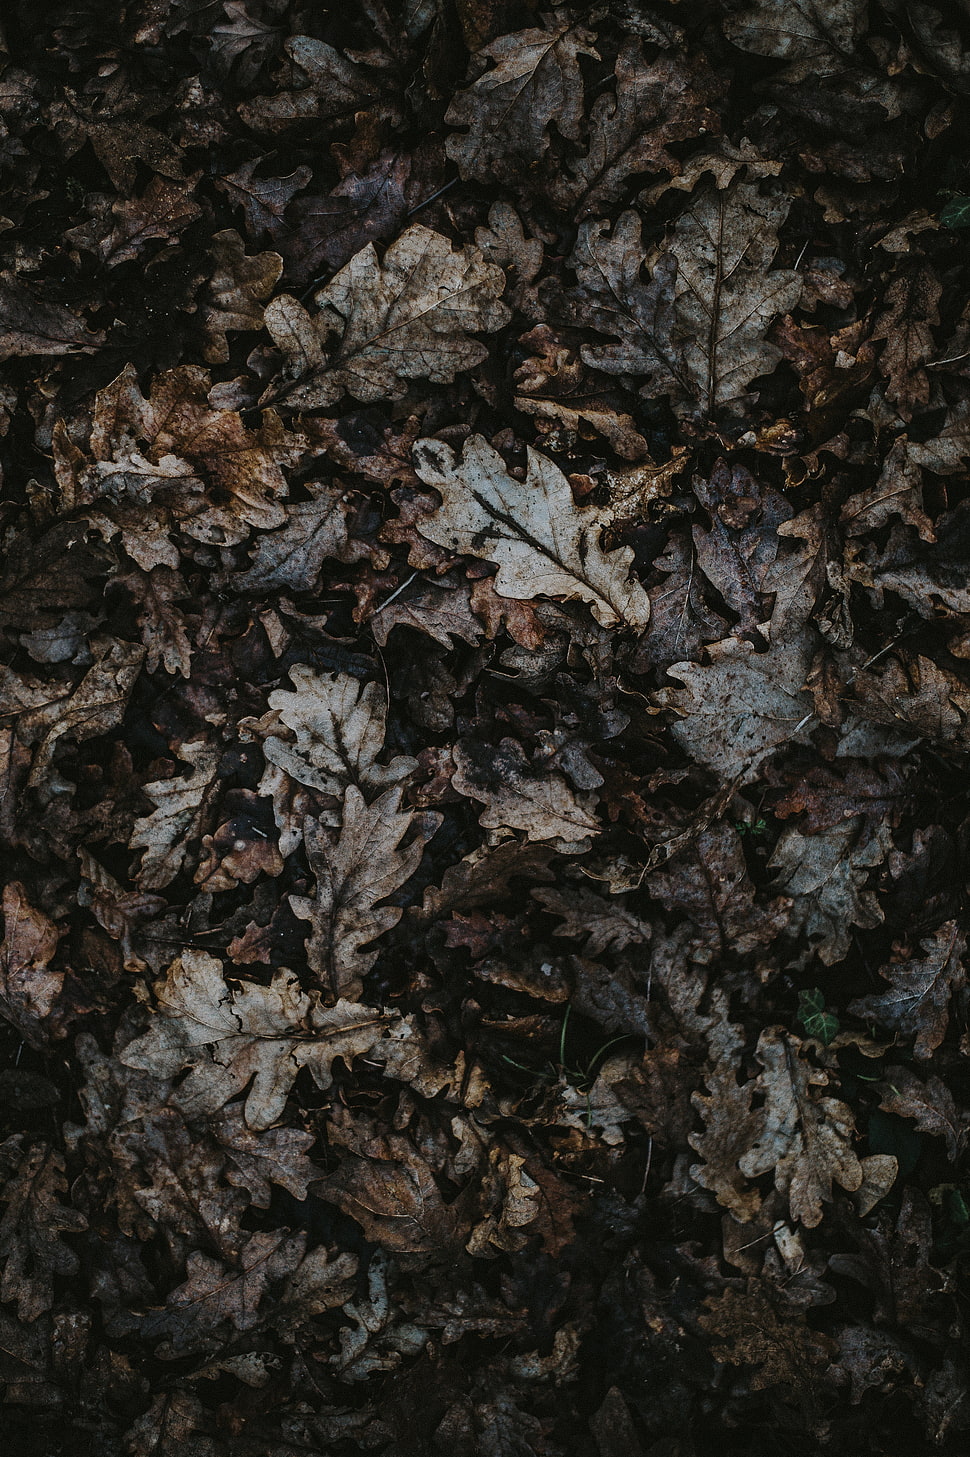 Dried leaf lot, Oak, Leaves, Autumn HD wallpaper | Wallpaper Flare